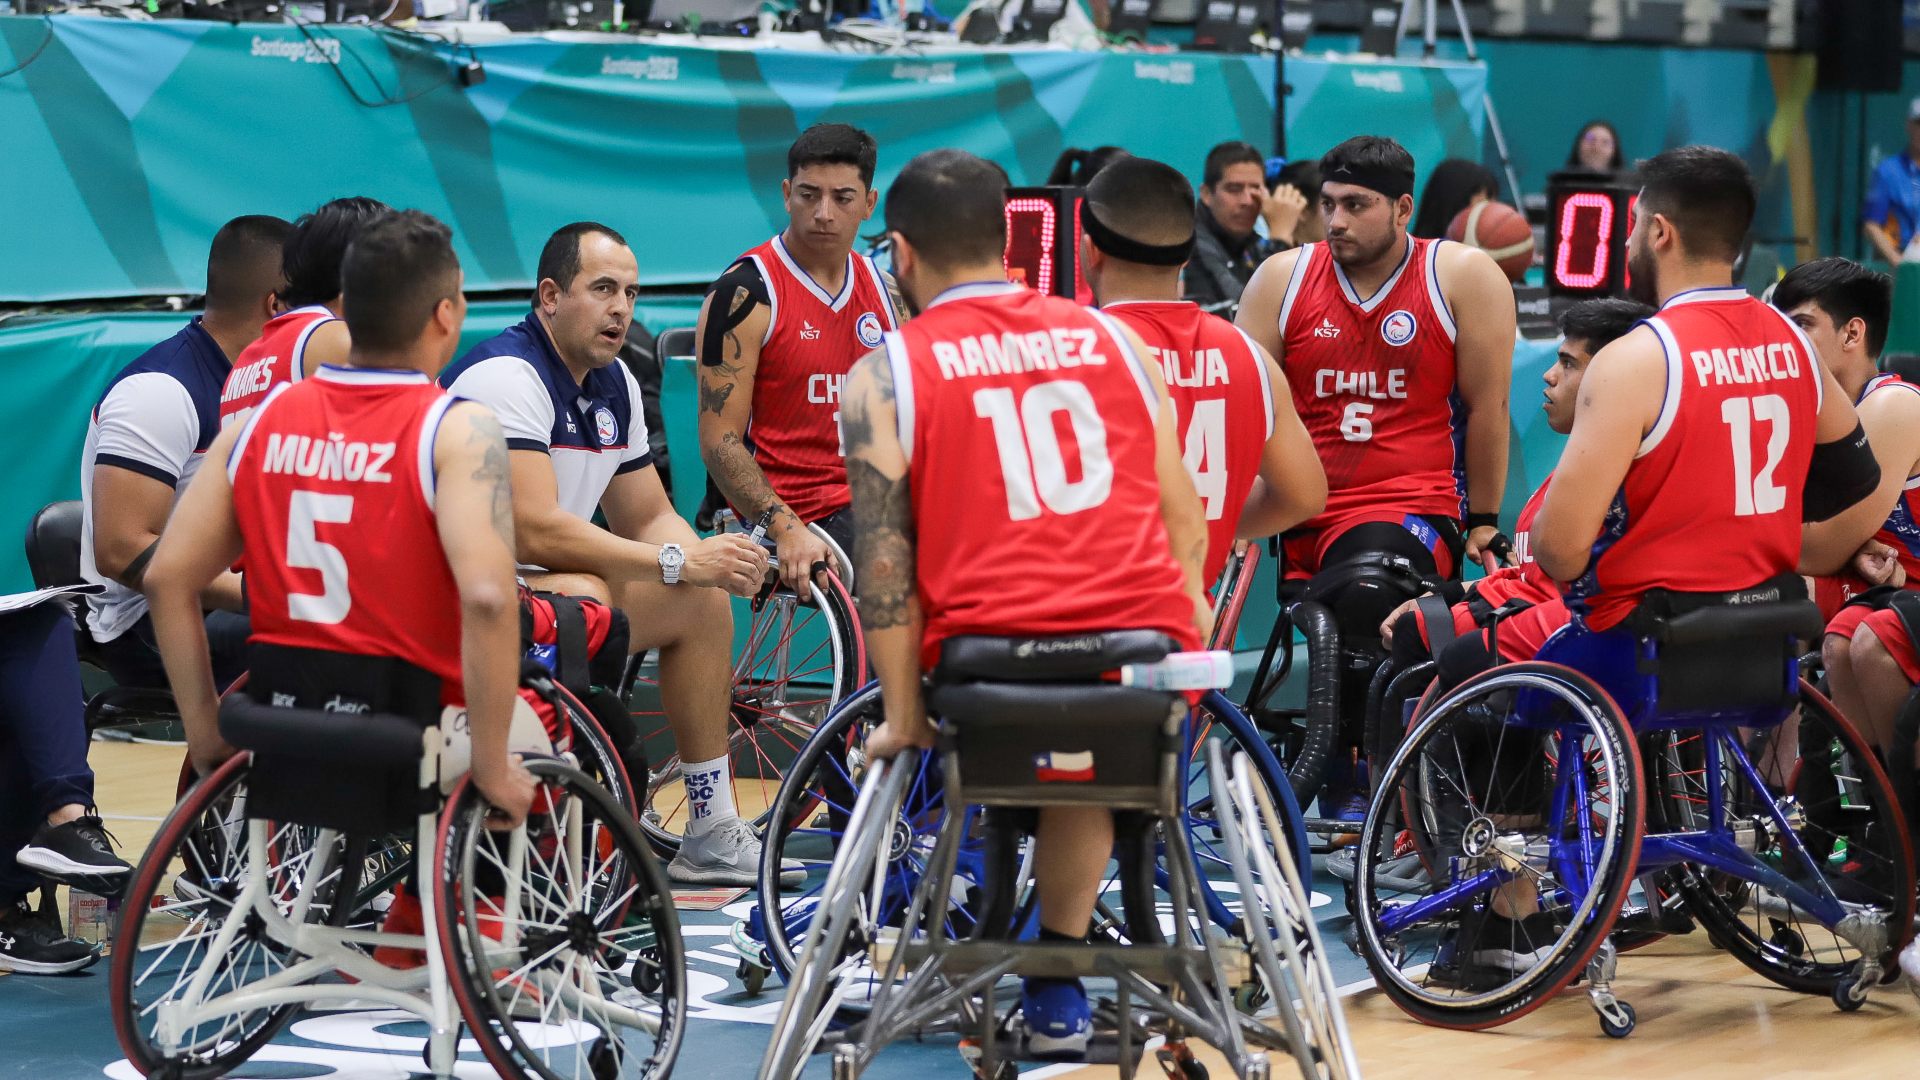 “Te reconforta escuchar el ‘ceacheí’ y el himno hasta el final”: el balance final del baloncesto chileno en silla de ruedas